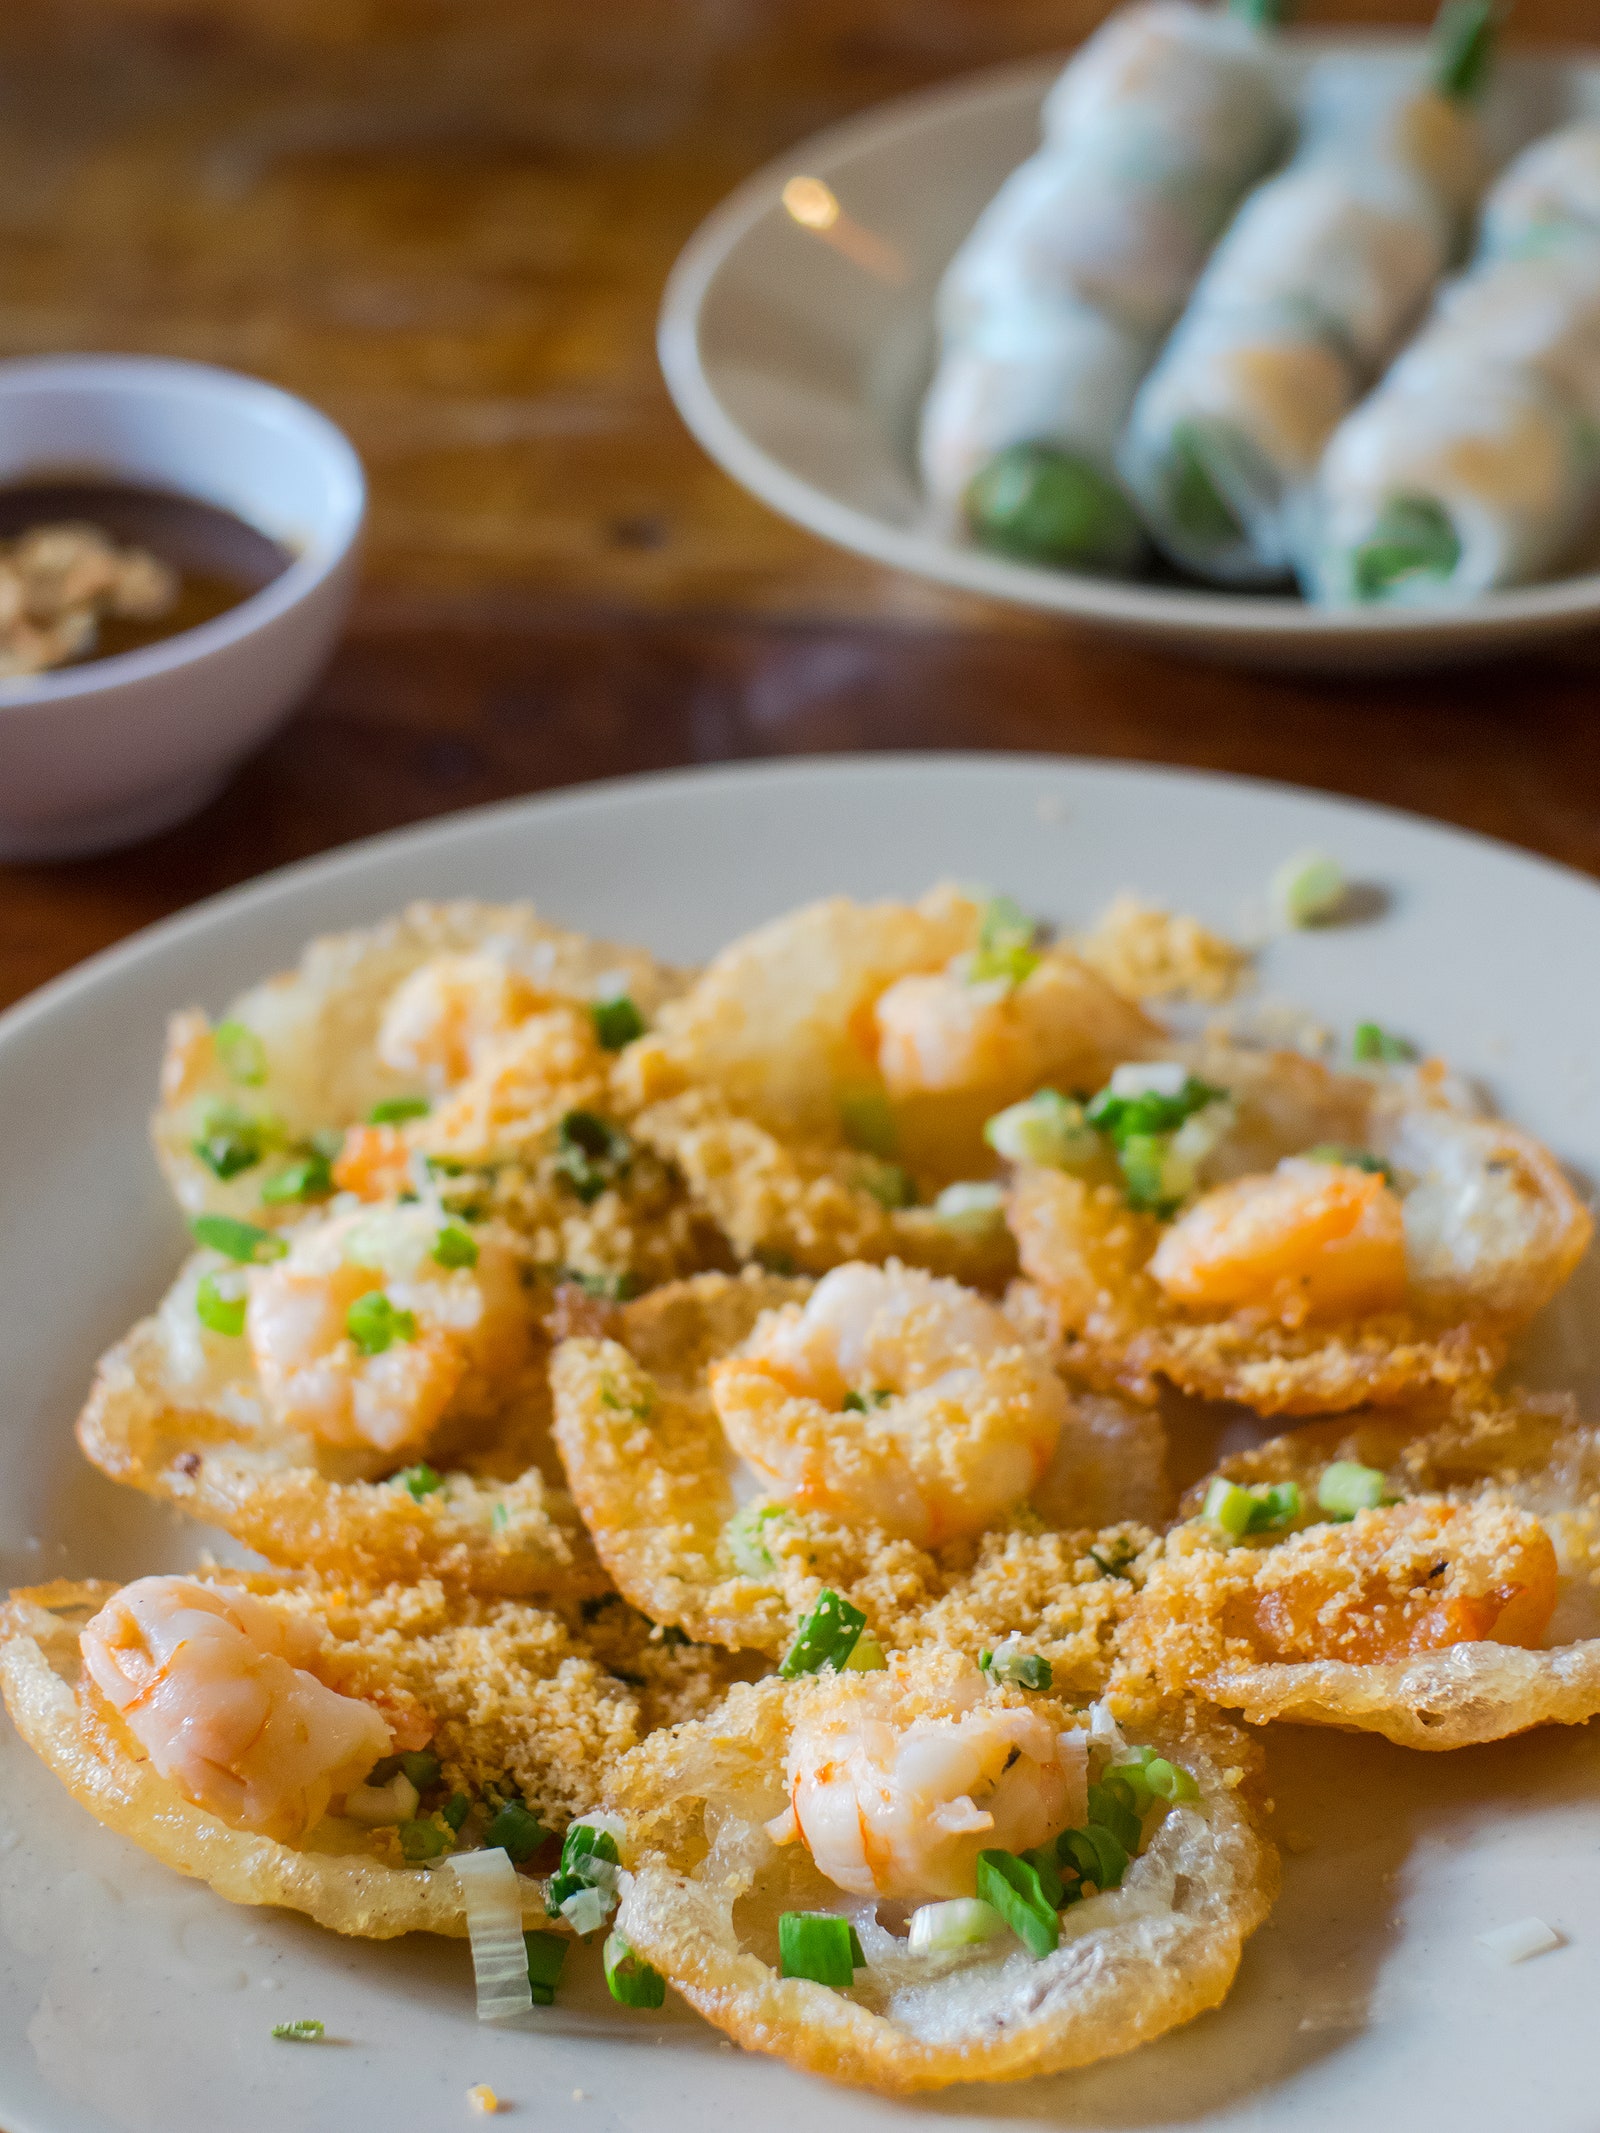 Ăn gì ở Việt Nam: 29 món nhất định phải thưởng thức ngoài Phở và Bánh mì - Ảnh 1.